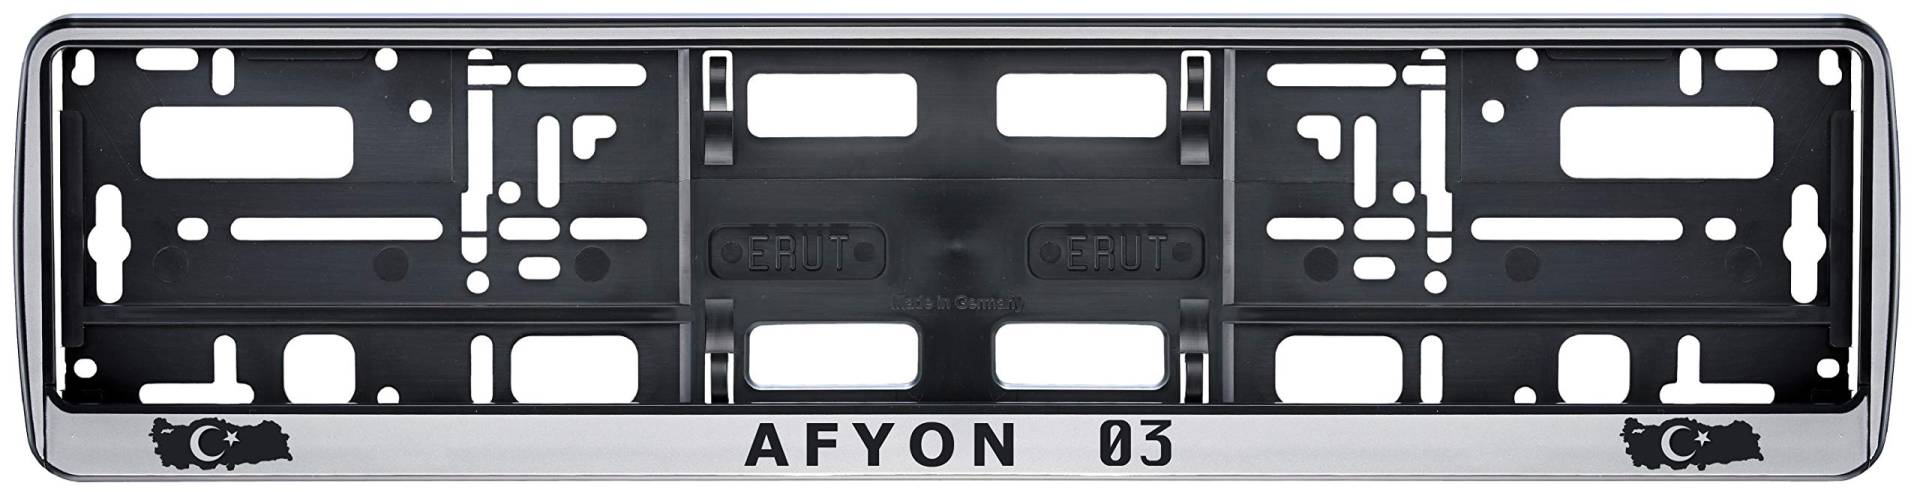 Auto Kennzeichenhalter in der Farbe Silber/Schwarz Nummernschildhalterung Auto, Nummernschildhalter Türkei Flagge 03 Afyon 2 Stück von aina